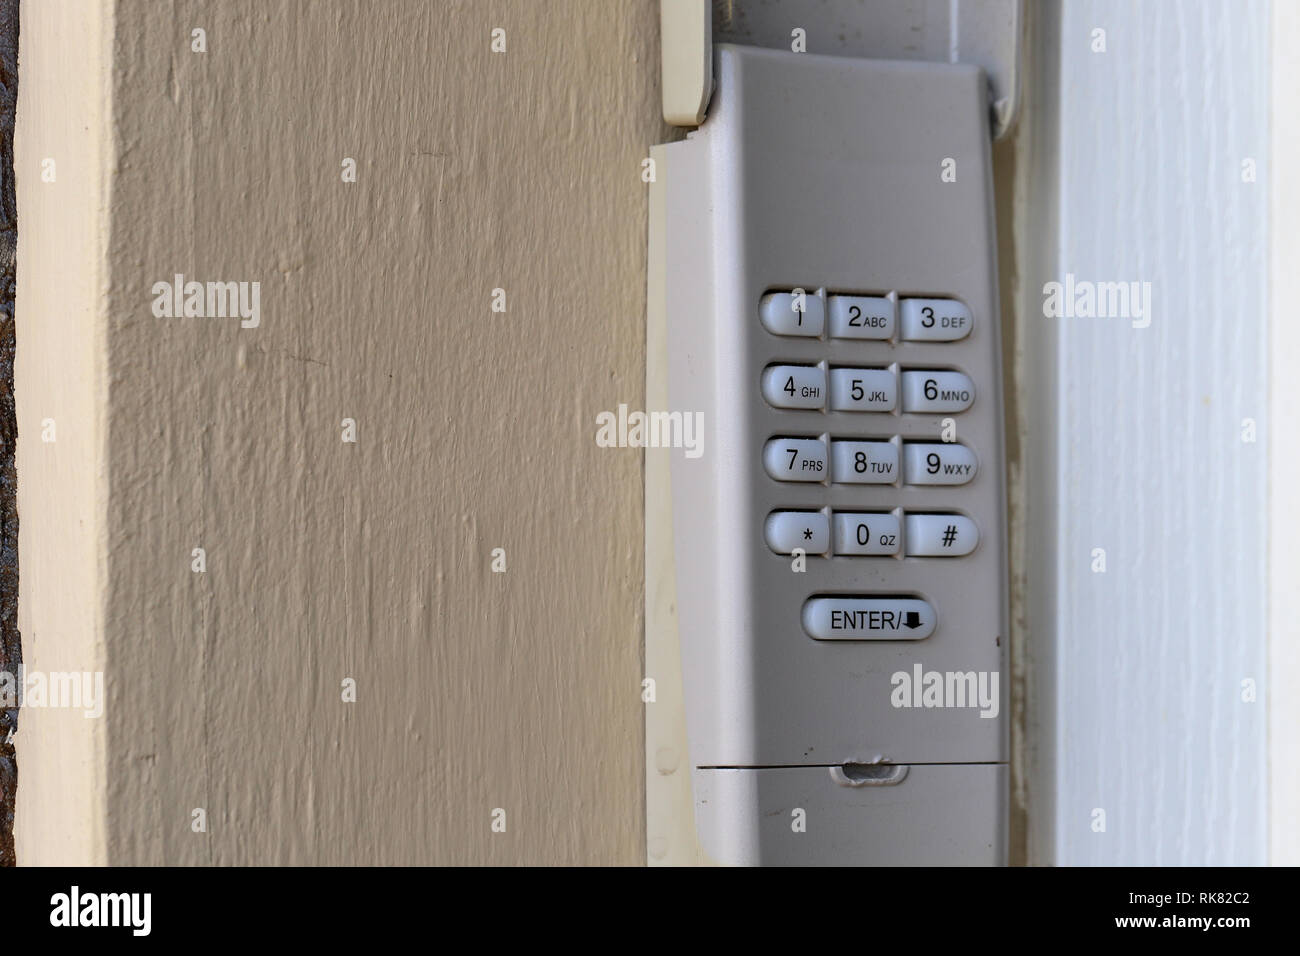 Clavier Code utilisé sur une porte de garage porte d'entrée d'une maison - Clavier de sécurité - code de sécurité Banque D'Images